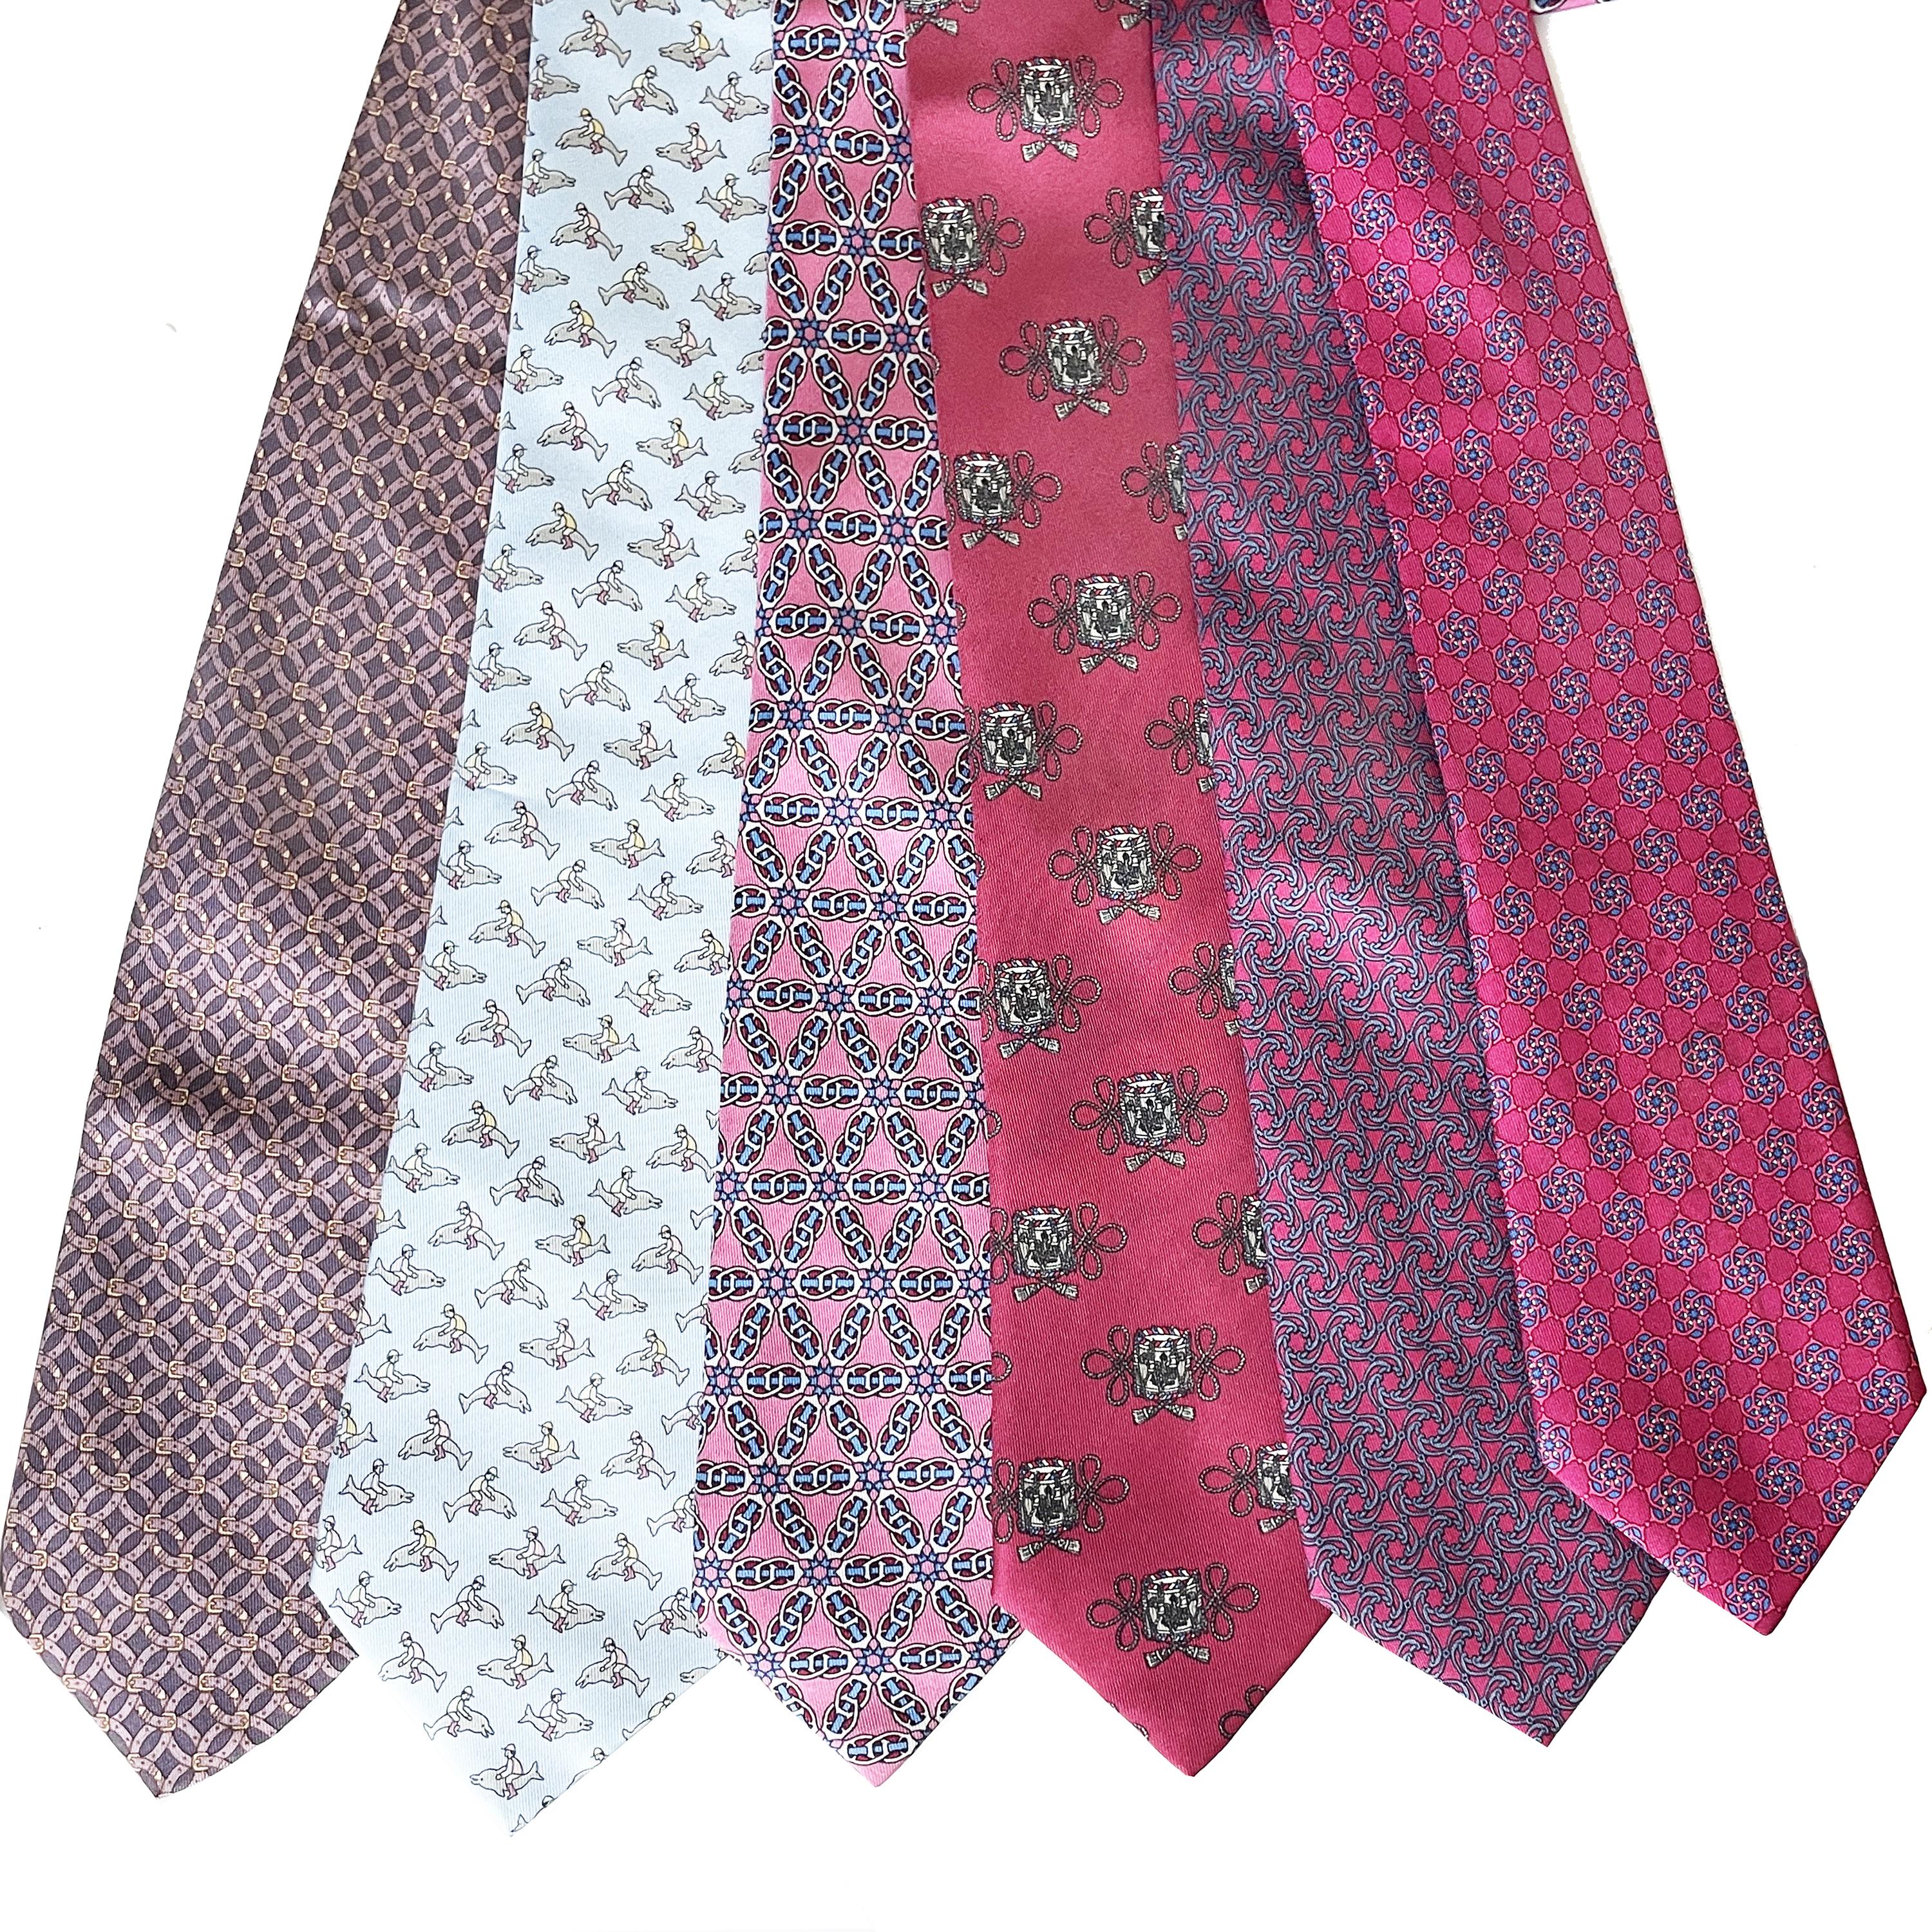 Hermes Necktie Lot of 34 Ties Mens Luxury Silk Rare Vintage Patterns 2